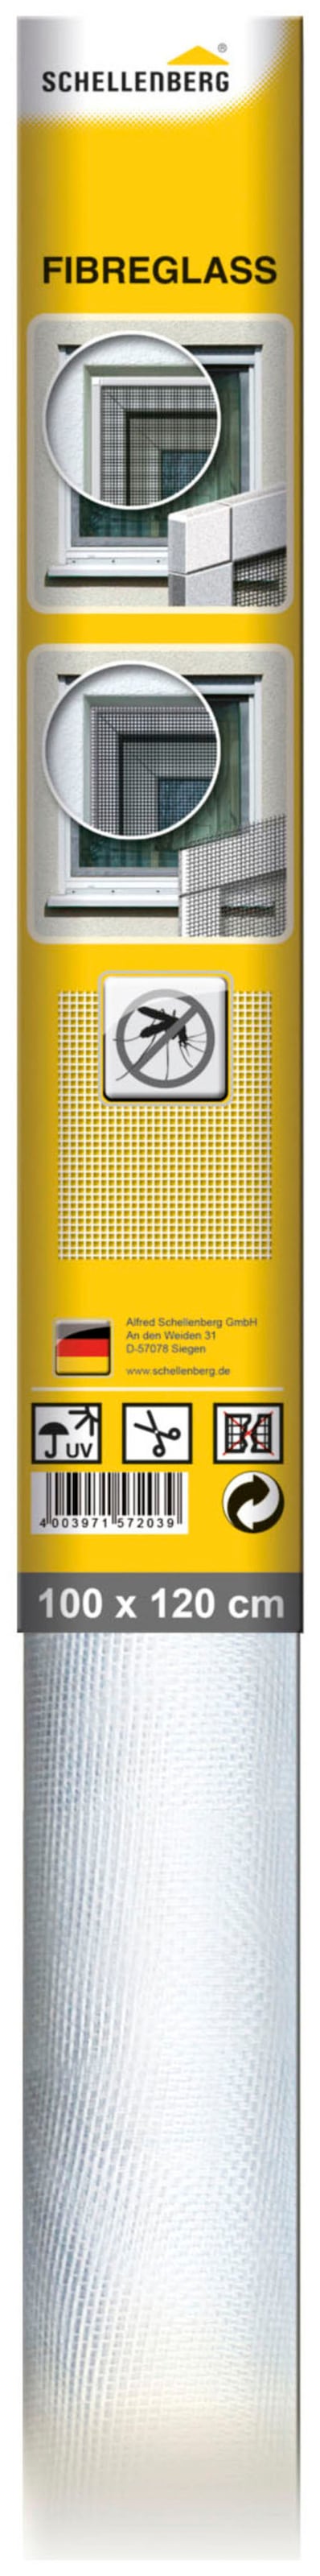 SCHELLENBERG Fliegengitter-Gewebe »aus Fiberglas«, Insektenschutz Rolle für  Fenster und Tür, 100 x 120 cm, 57203 online kaufen